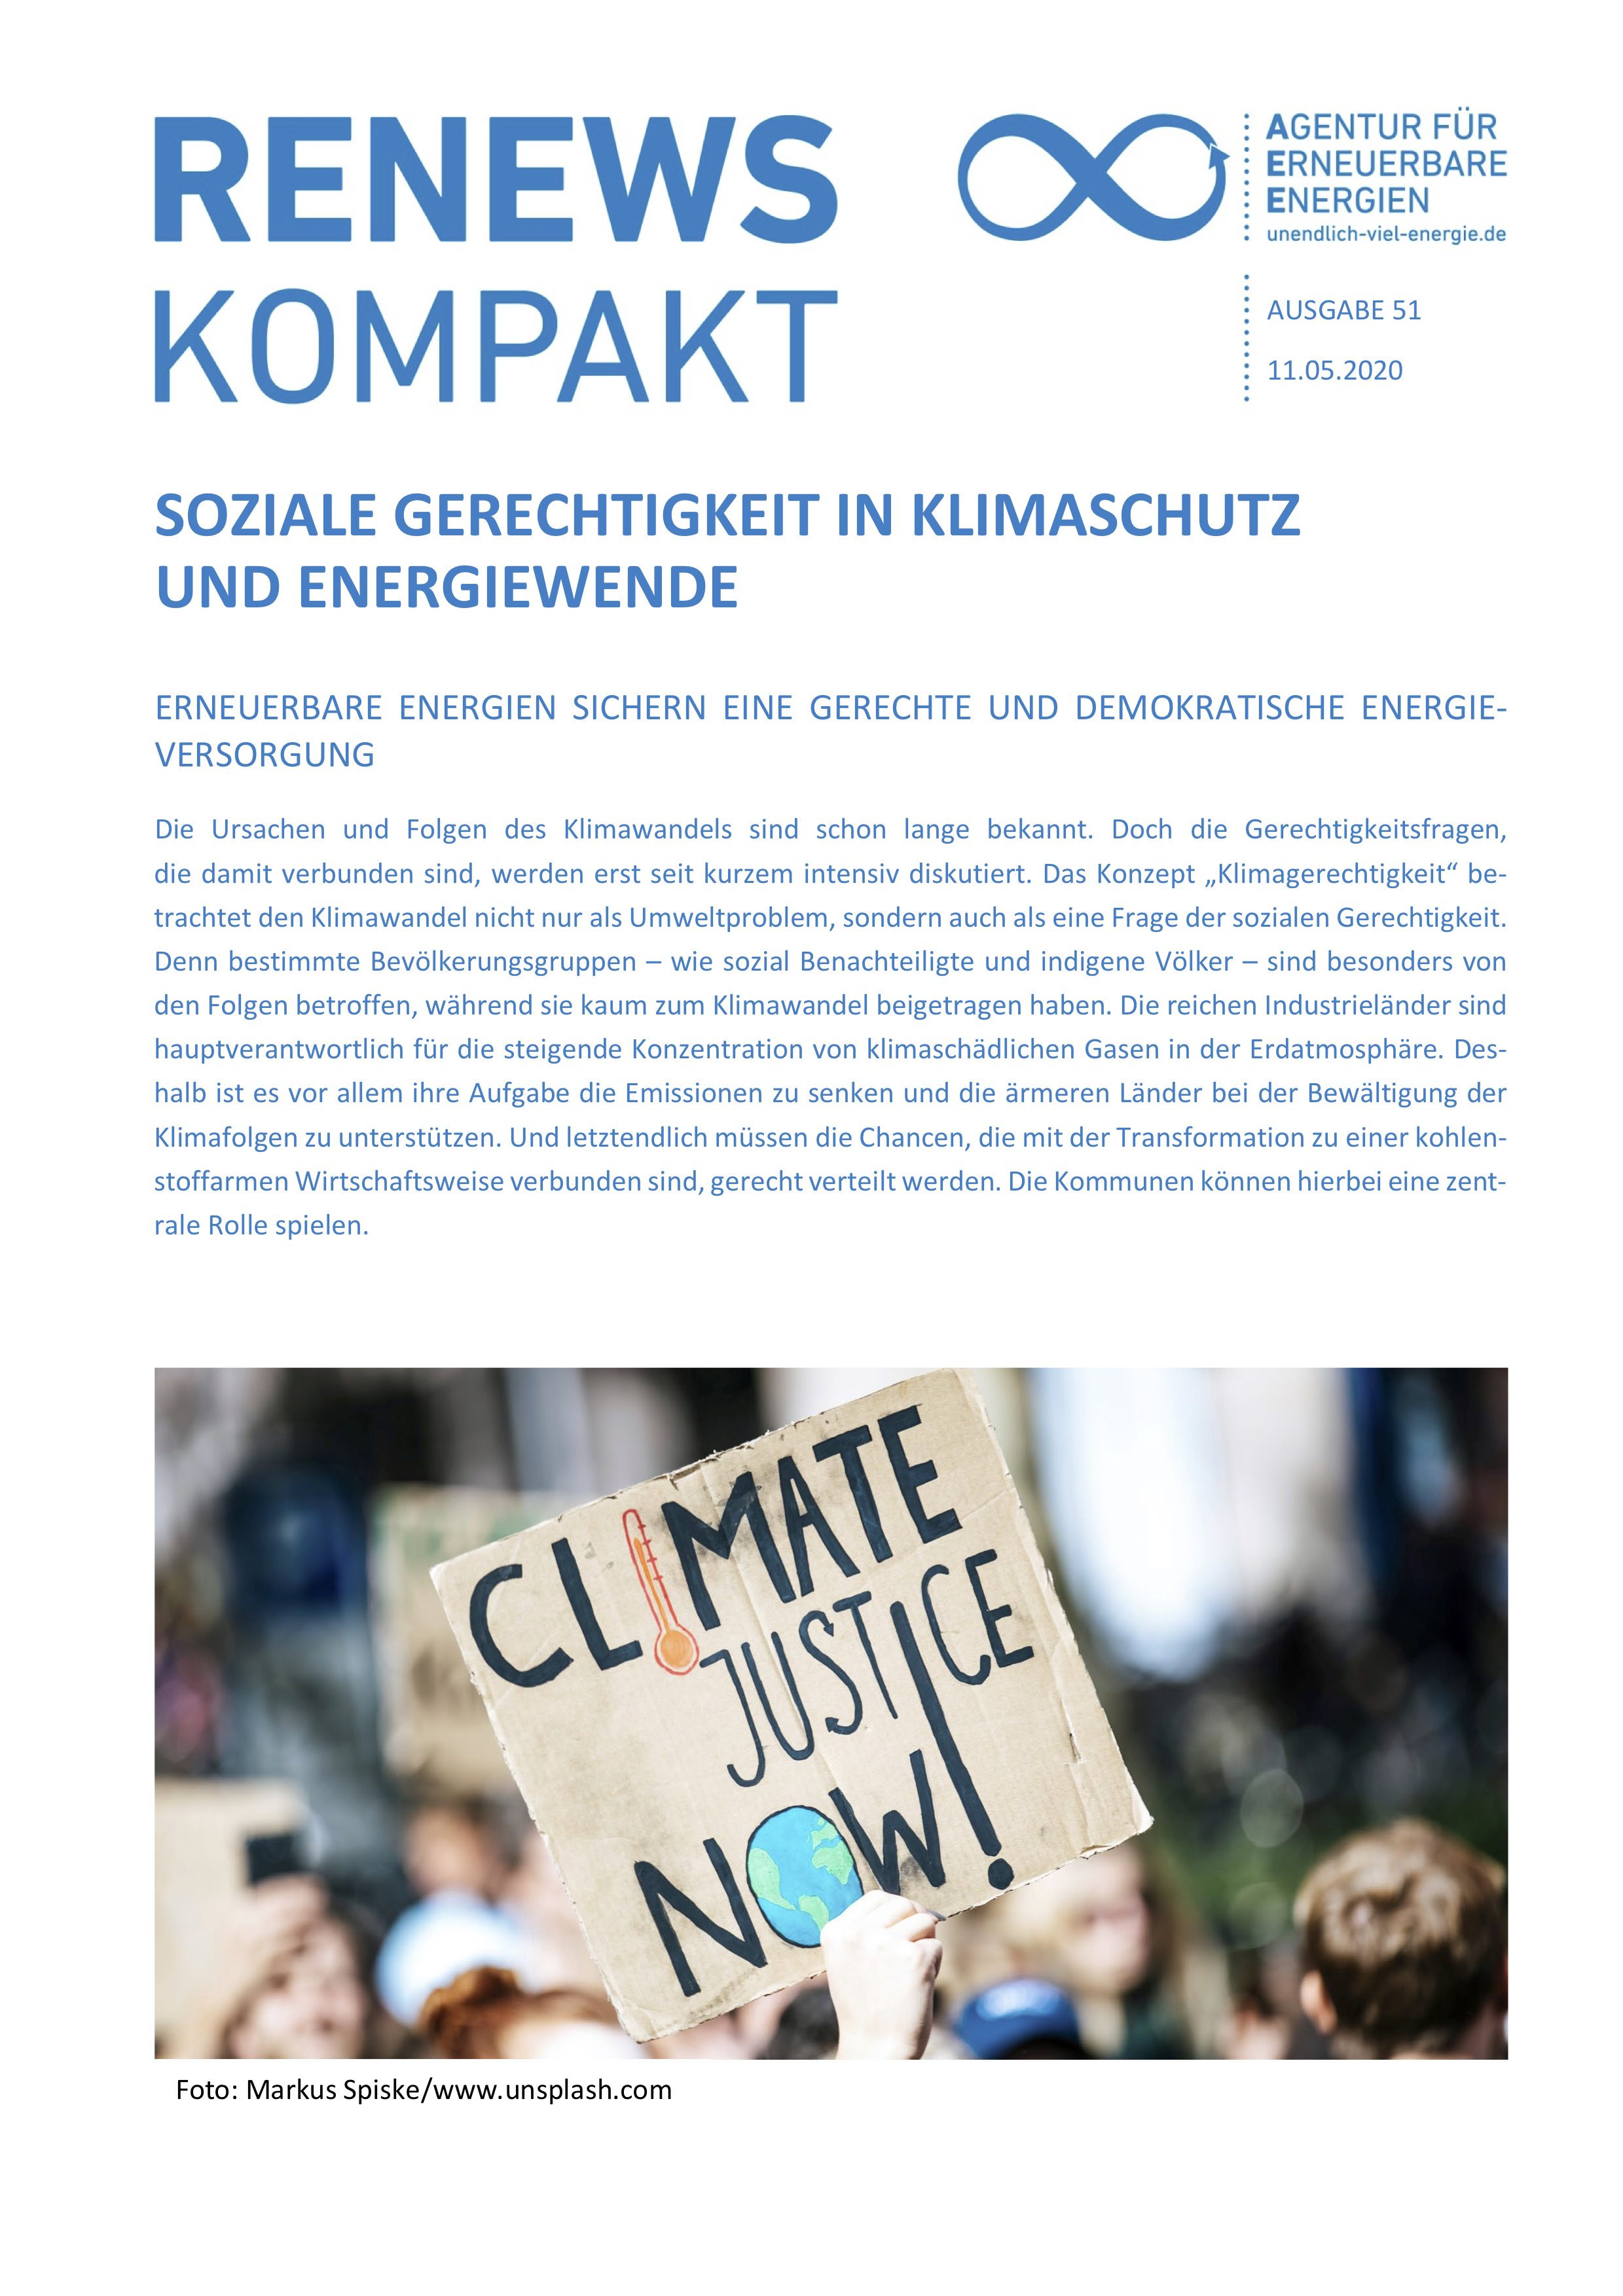 Titel der Renews Kompakt, auf dem eine demonstrierende Person zu sehen ist, die ein Schild mit der Aufschrift "Climate Justice Now" hoch hält